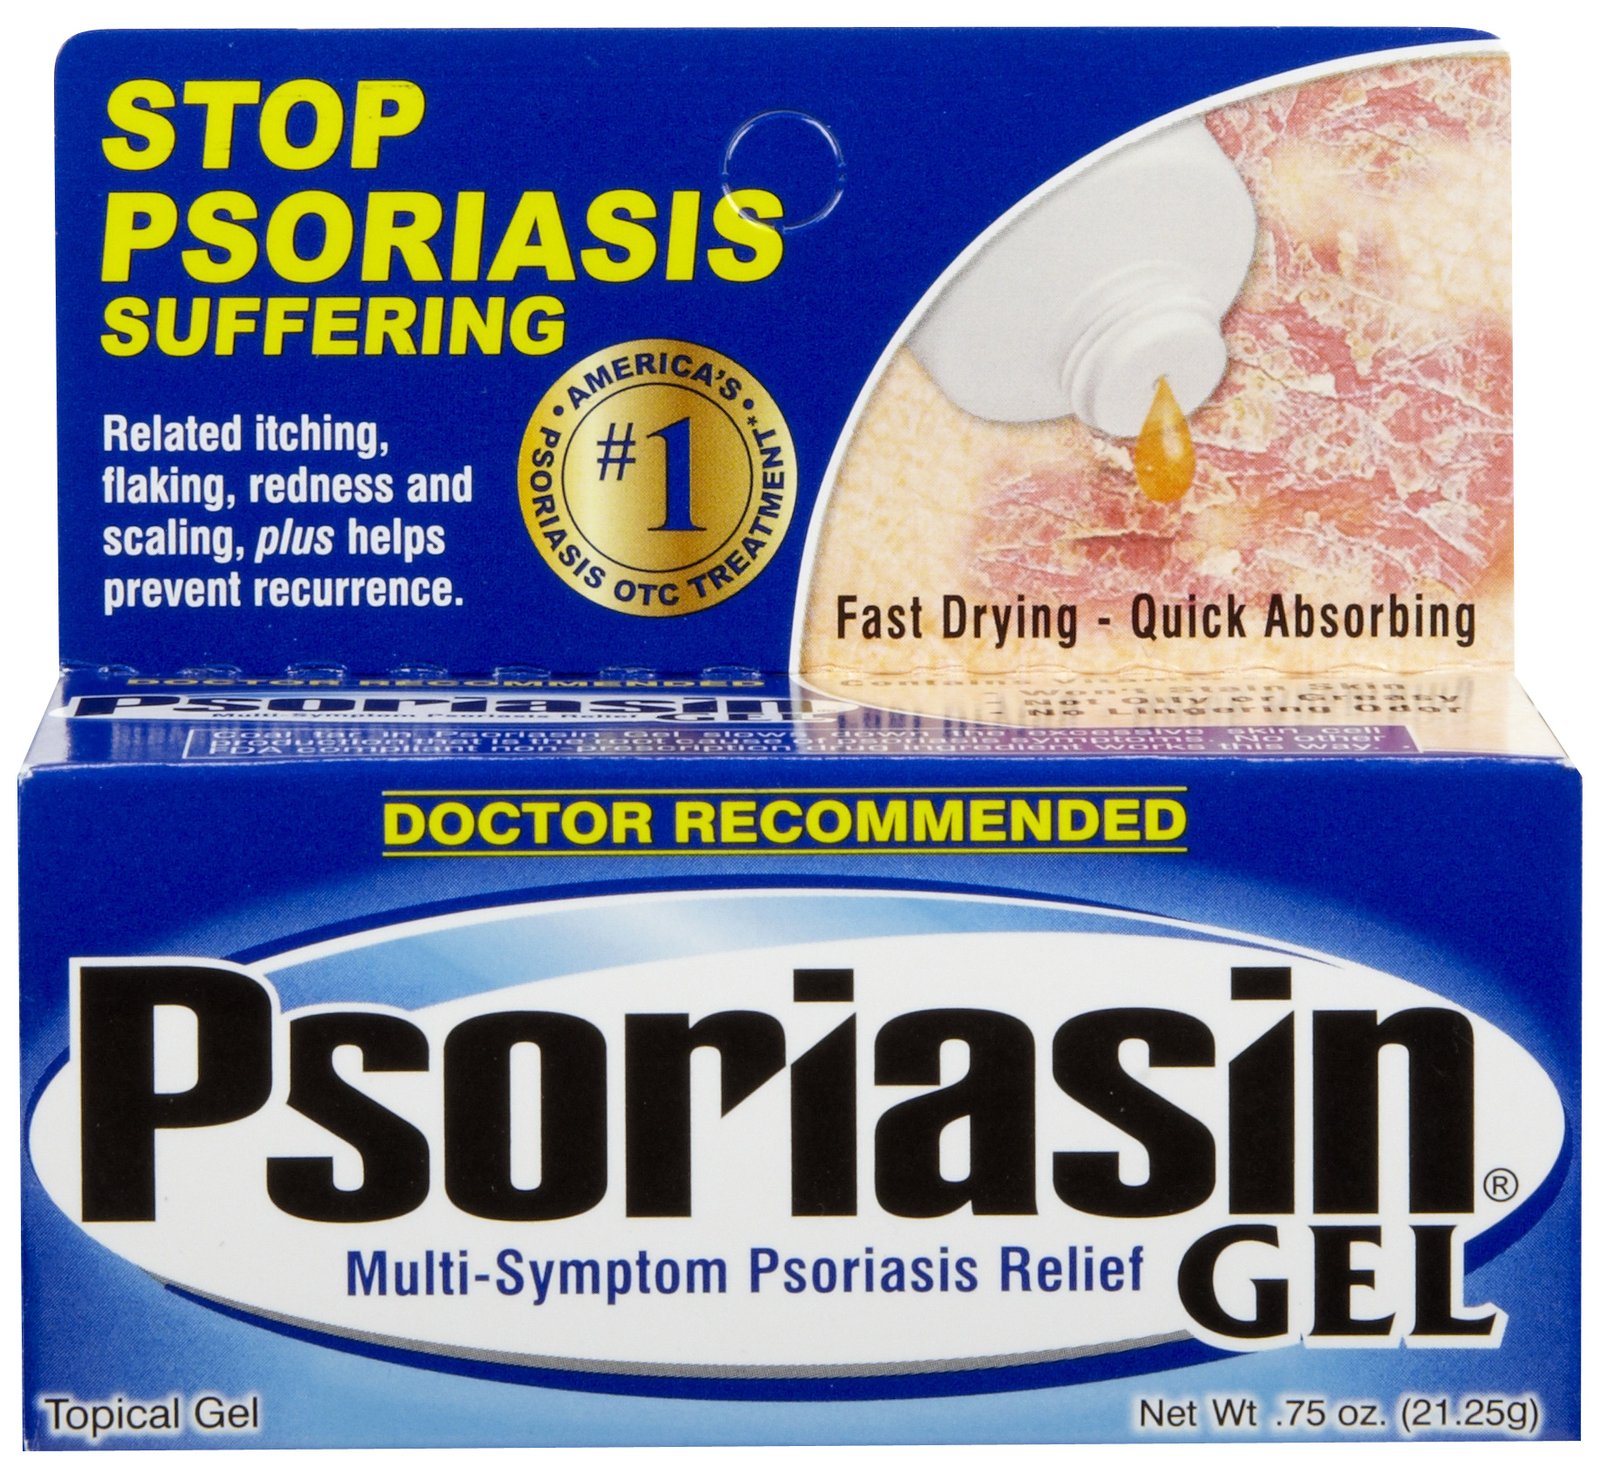 FREE Psoriasis Medication